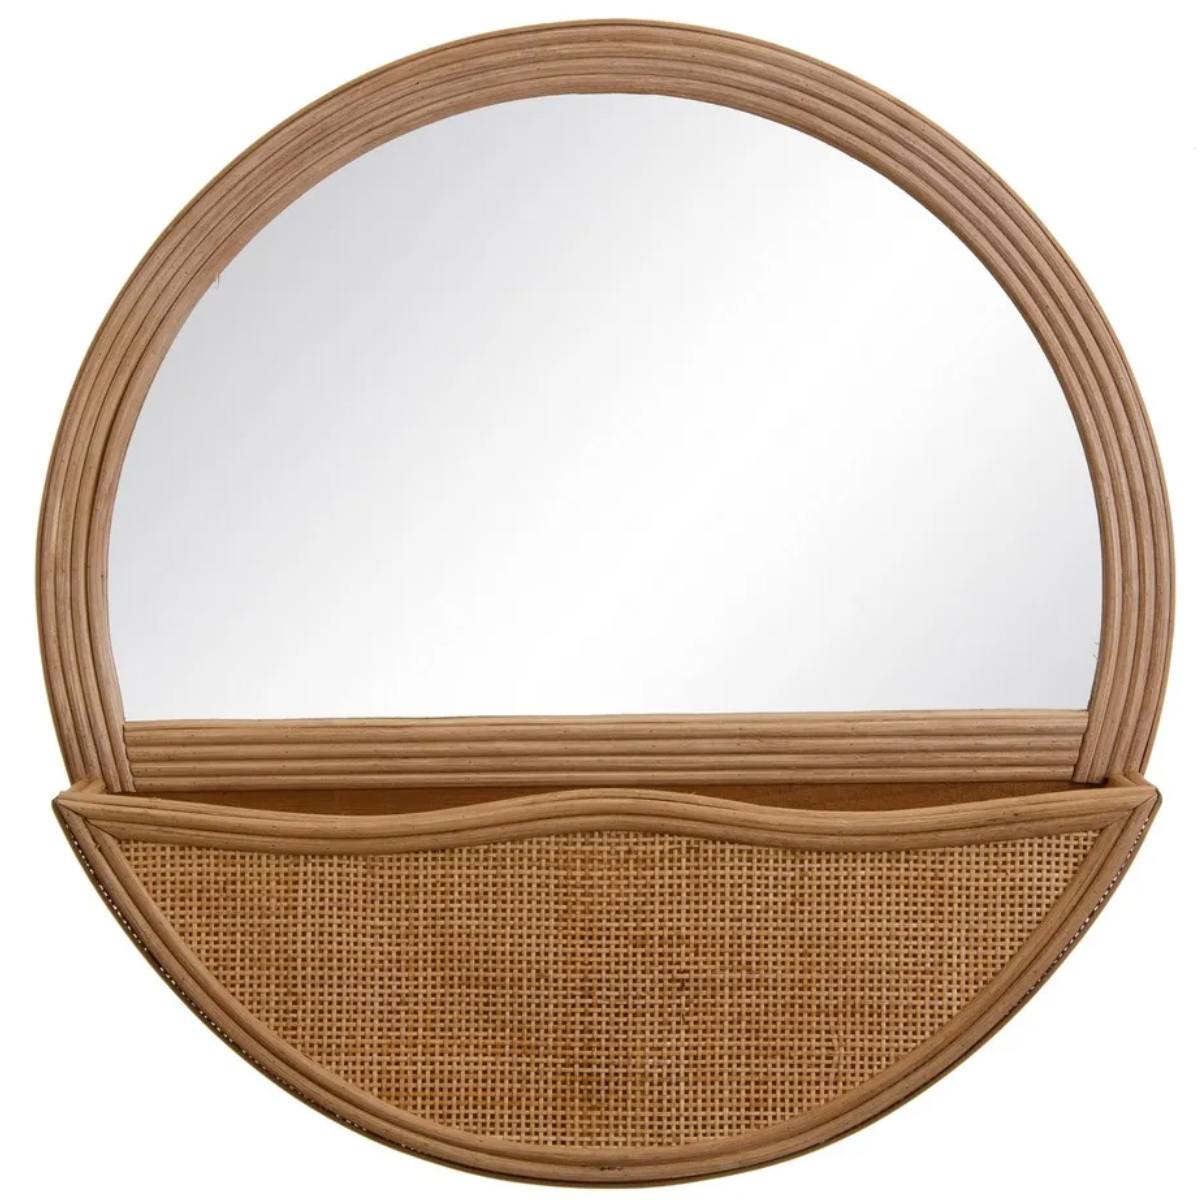 Large round mirror with rattan storage